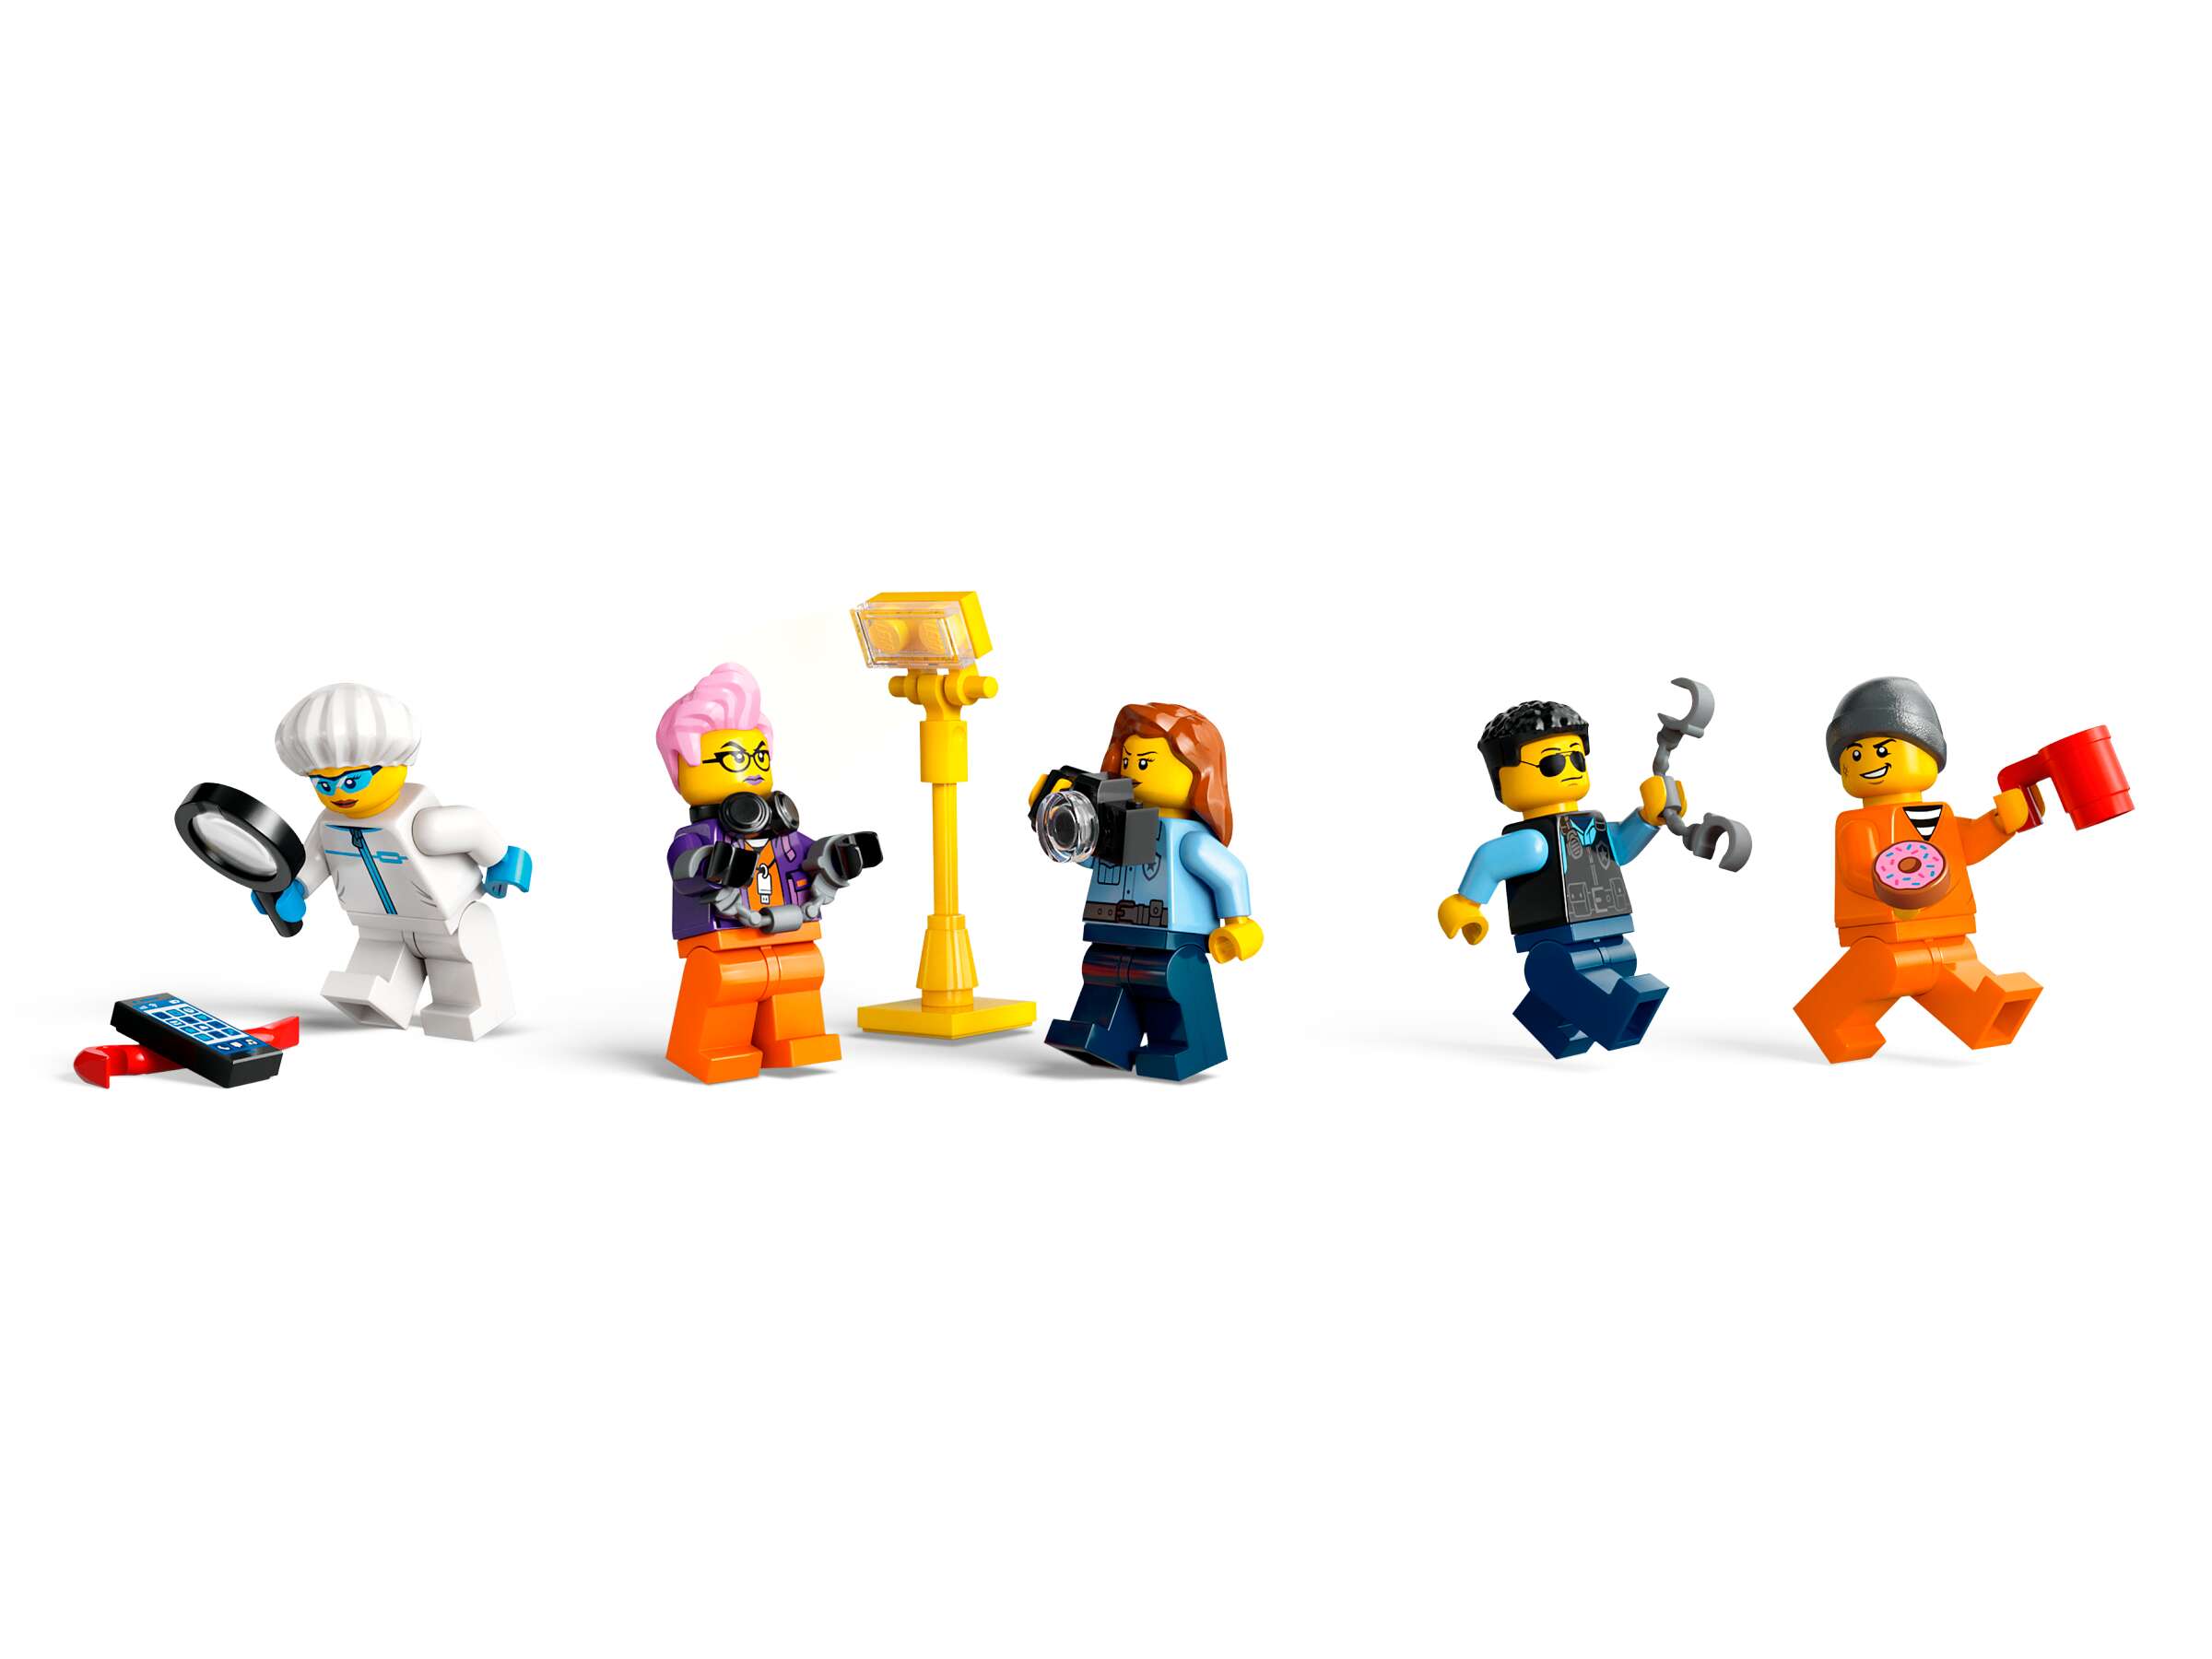 LEGO 60418 City Polizeitruck mit Labor, 5 Minifiguren, Quad, Tatortkulisse